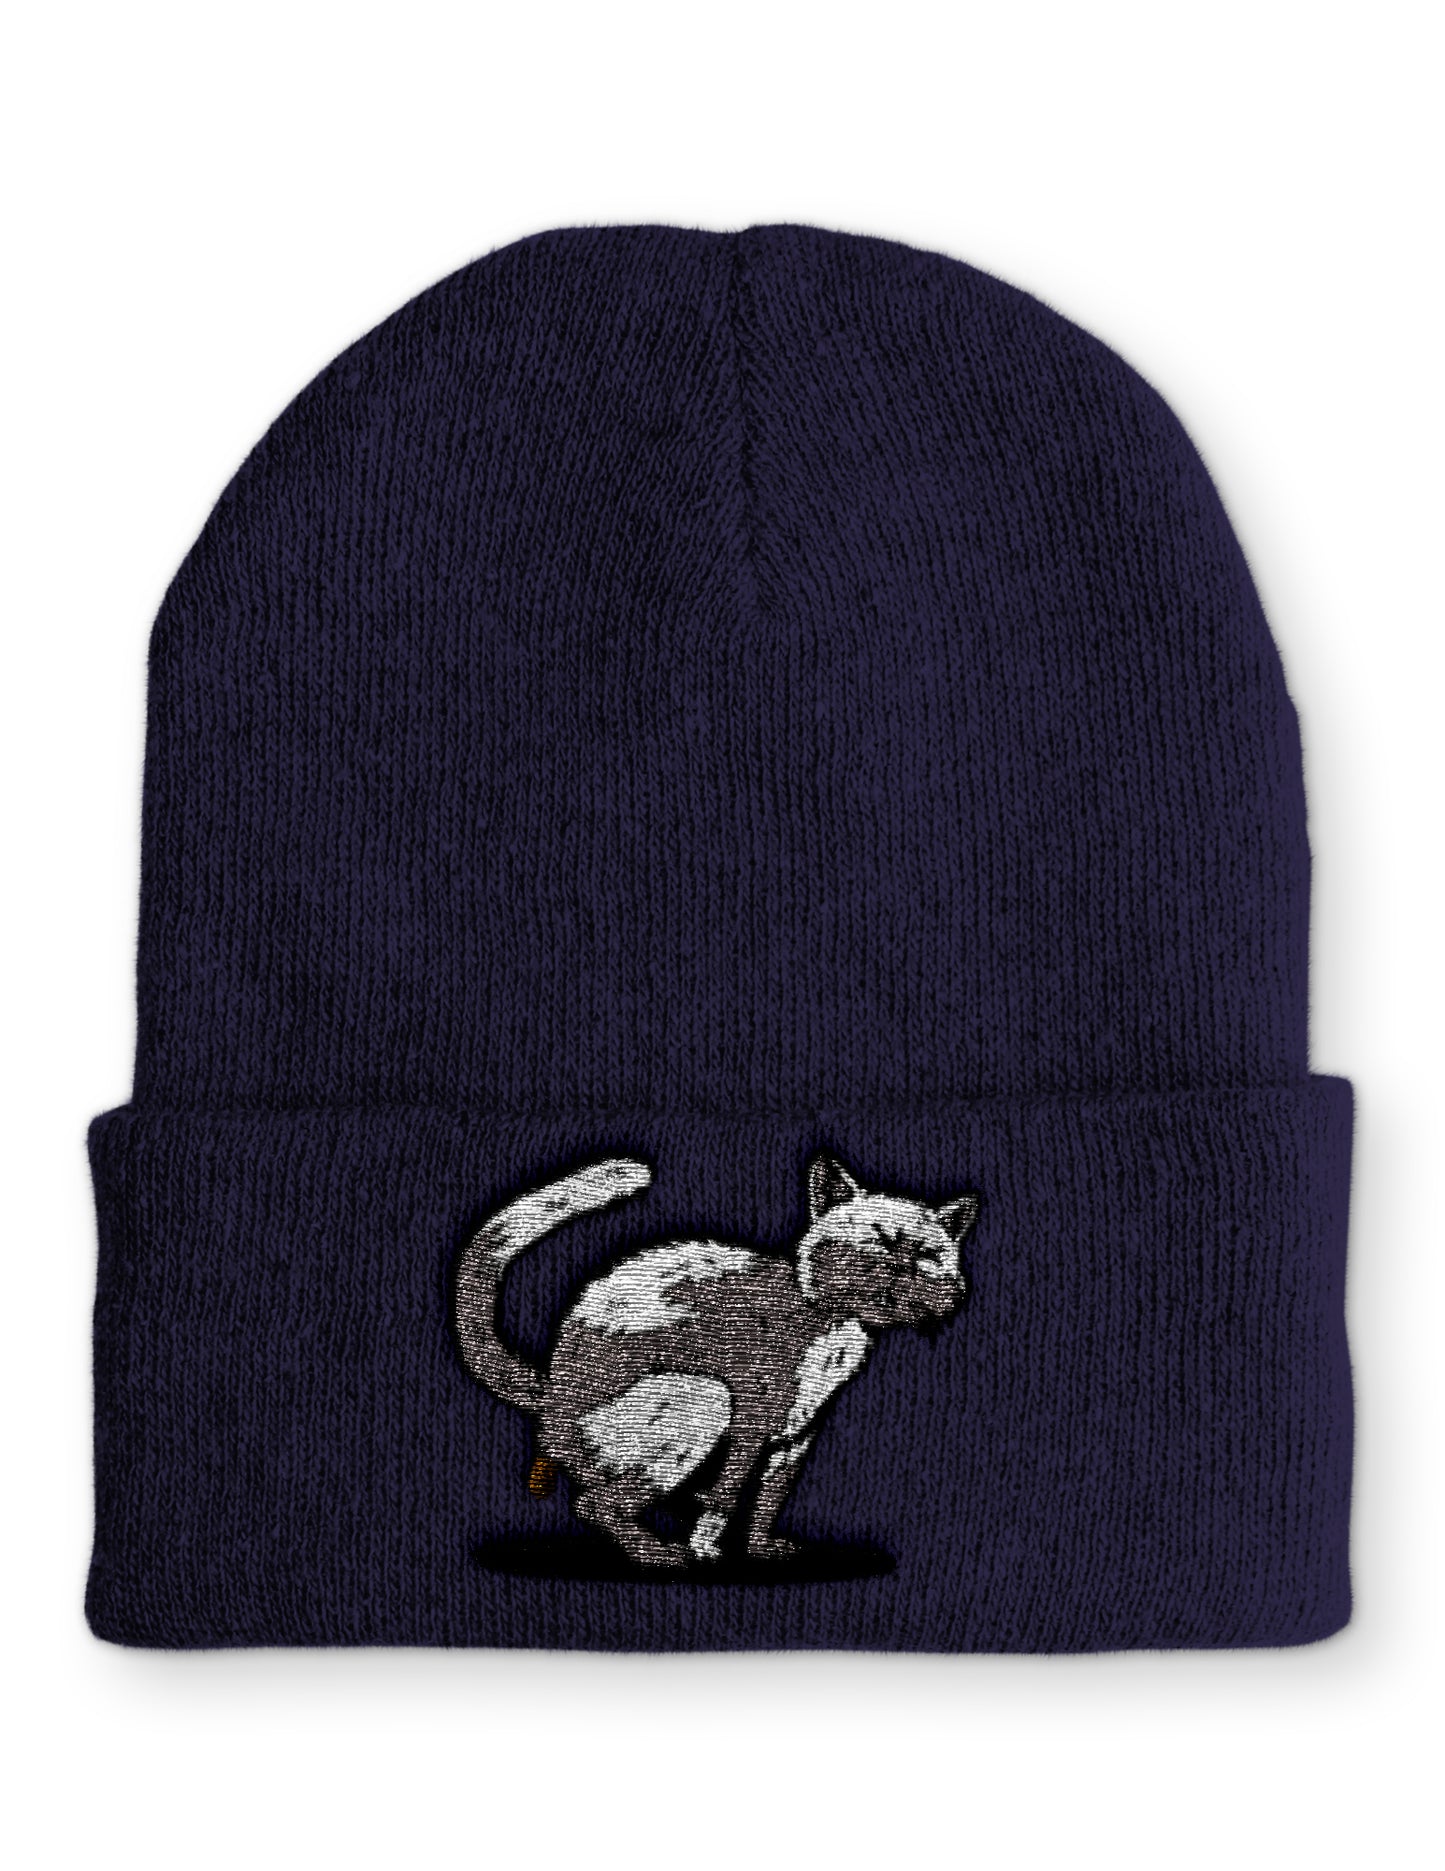 Mütze Kackende Katze